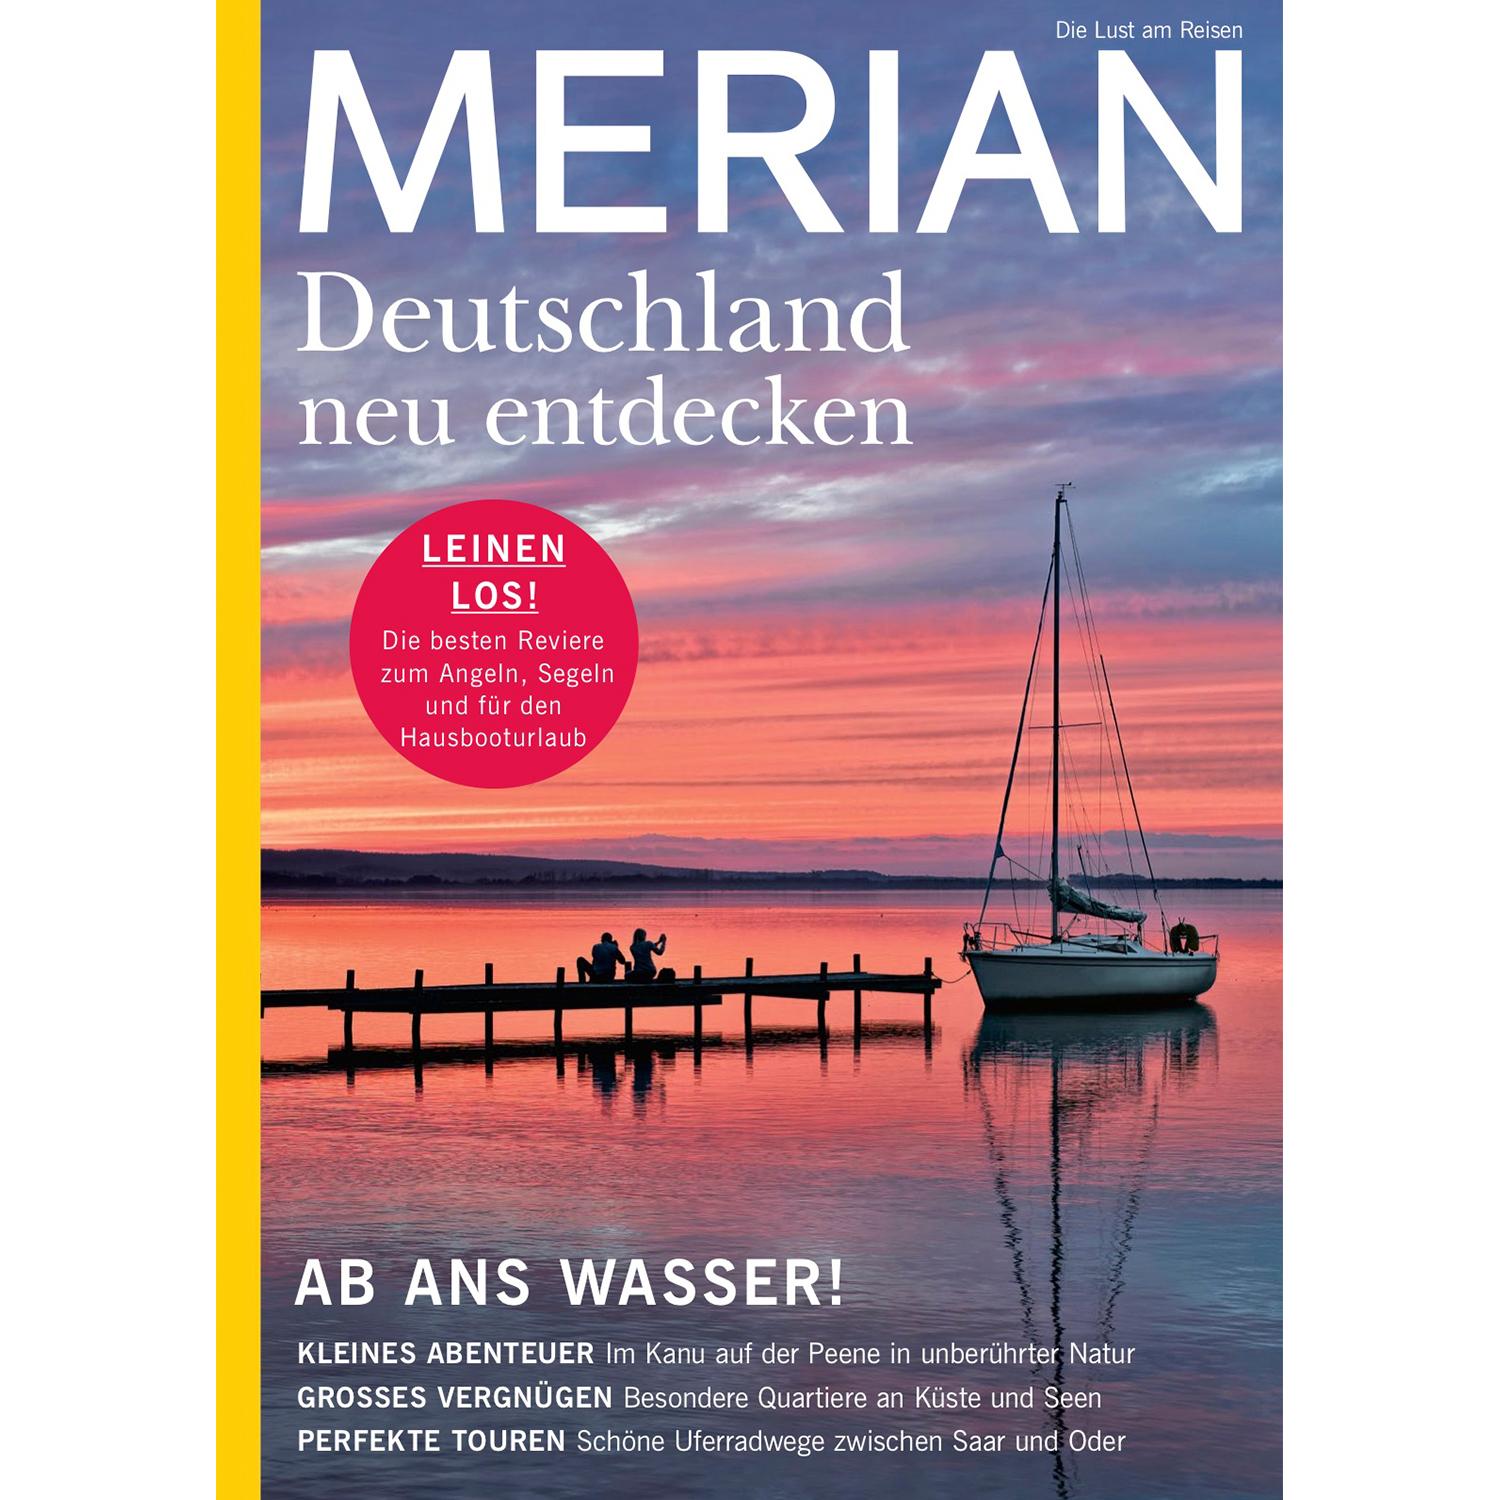 City Trips 11/21 MERIAN Hefte MERIAN Magazin Deutschland neu entdecken